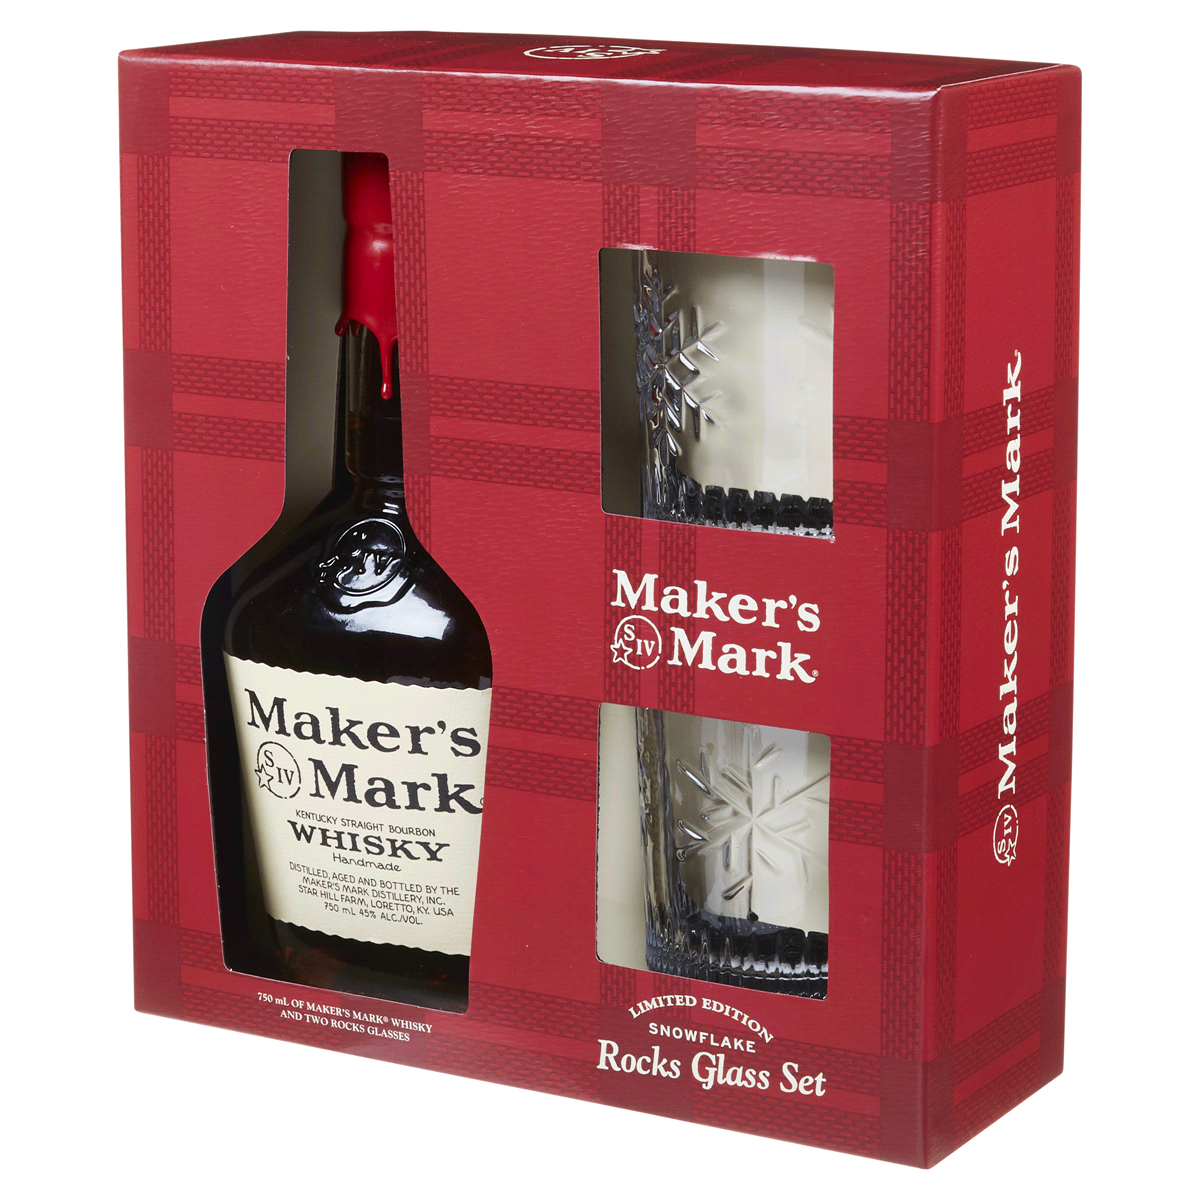 Member's Mark Kentucky Straight Bourbon Whiskey (750 ml)